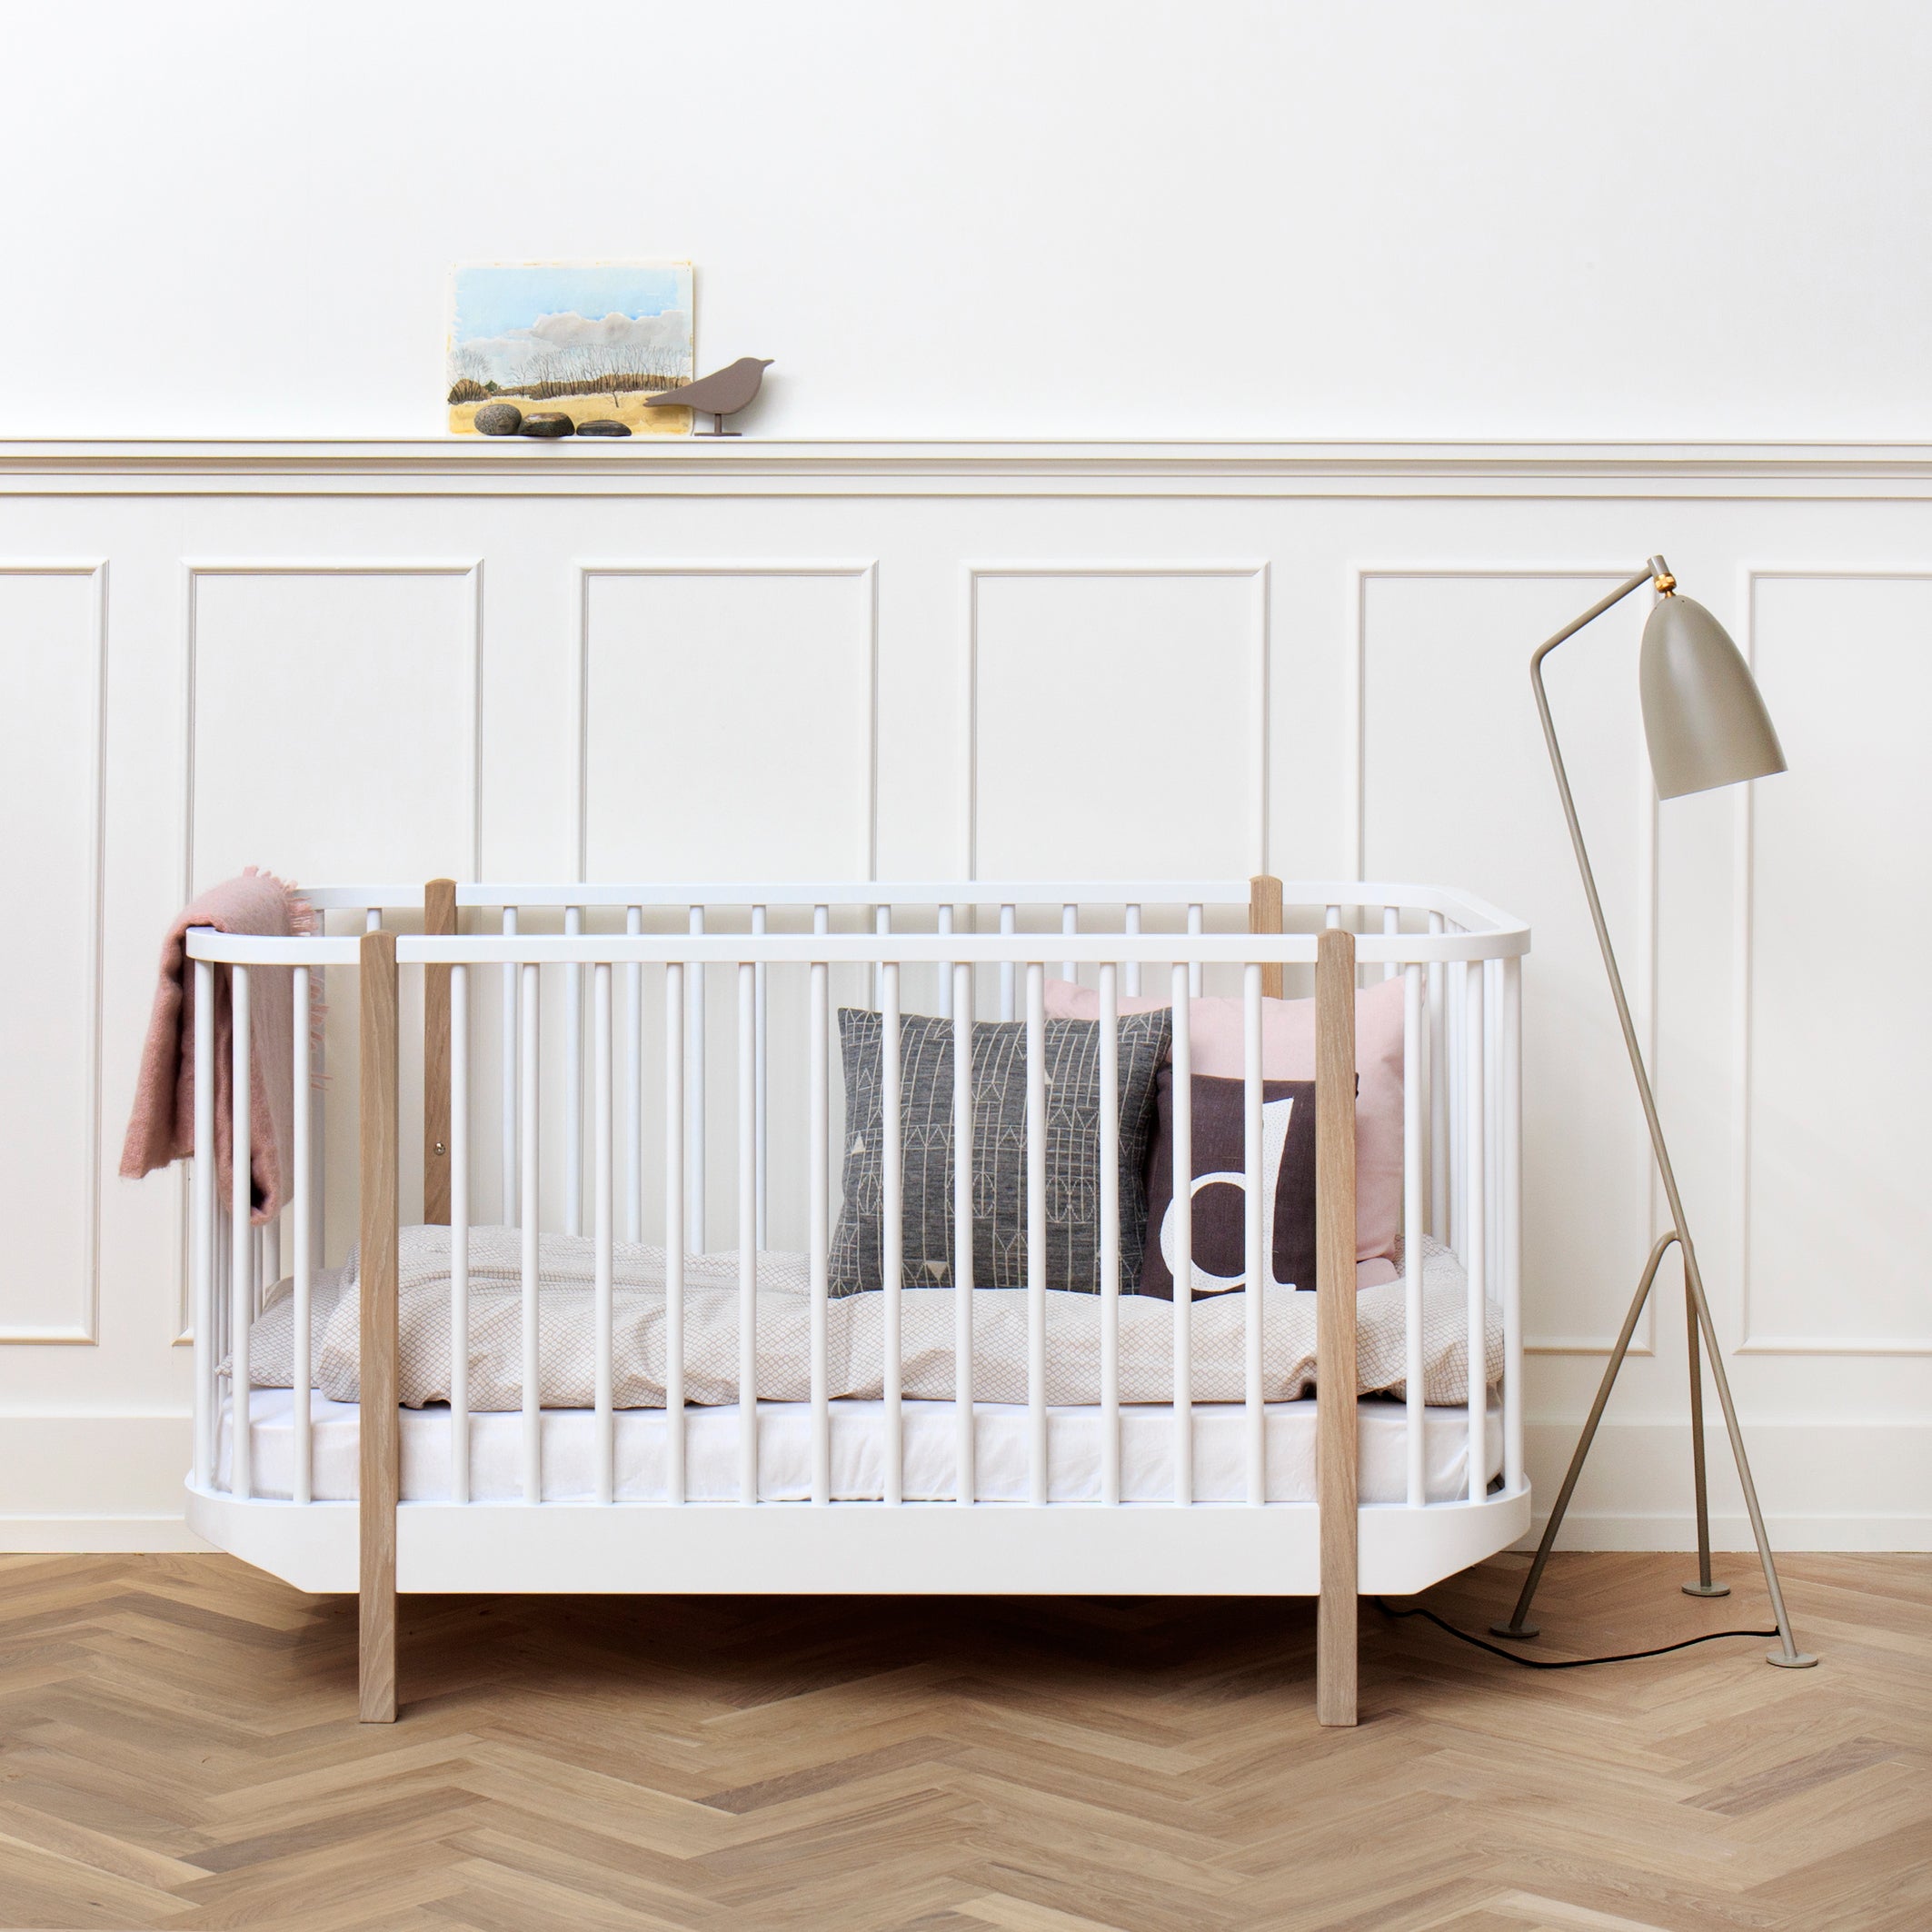 Oliver Furniture Wood 嬰兒床 白色配橡木色